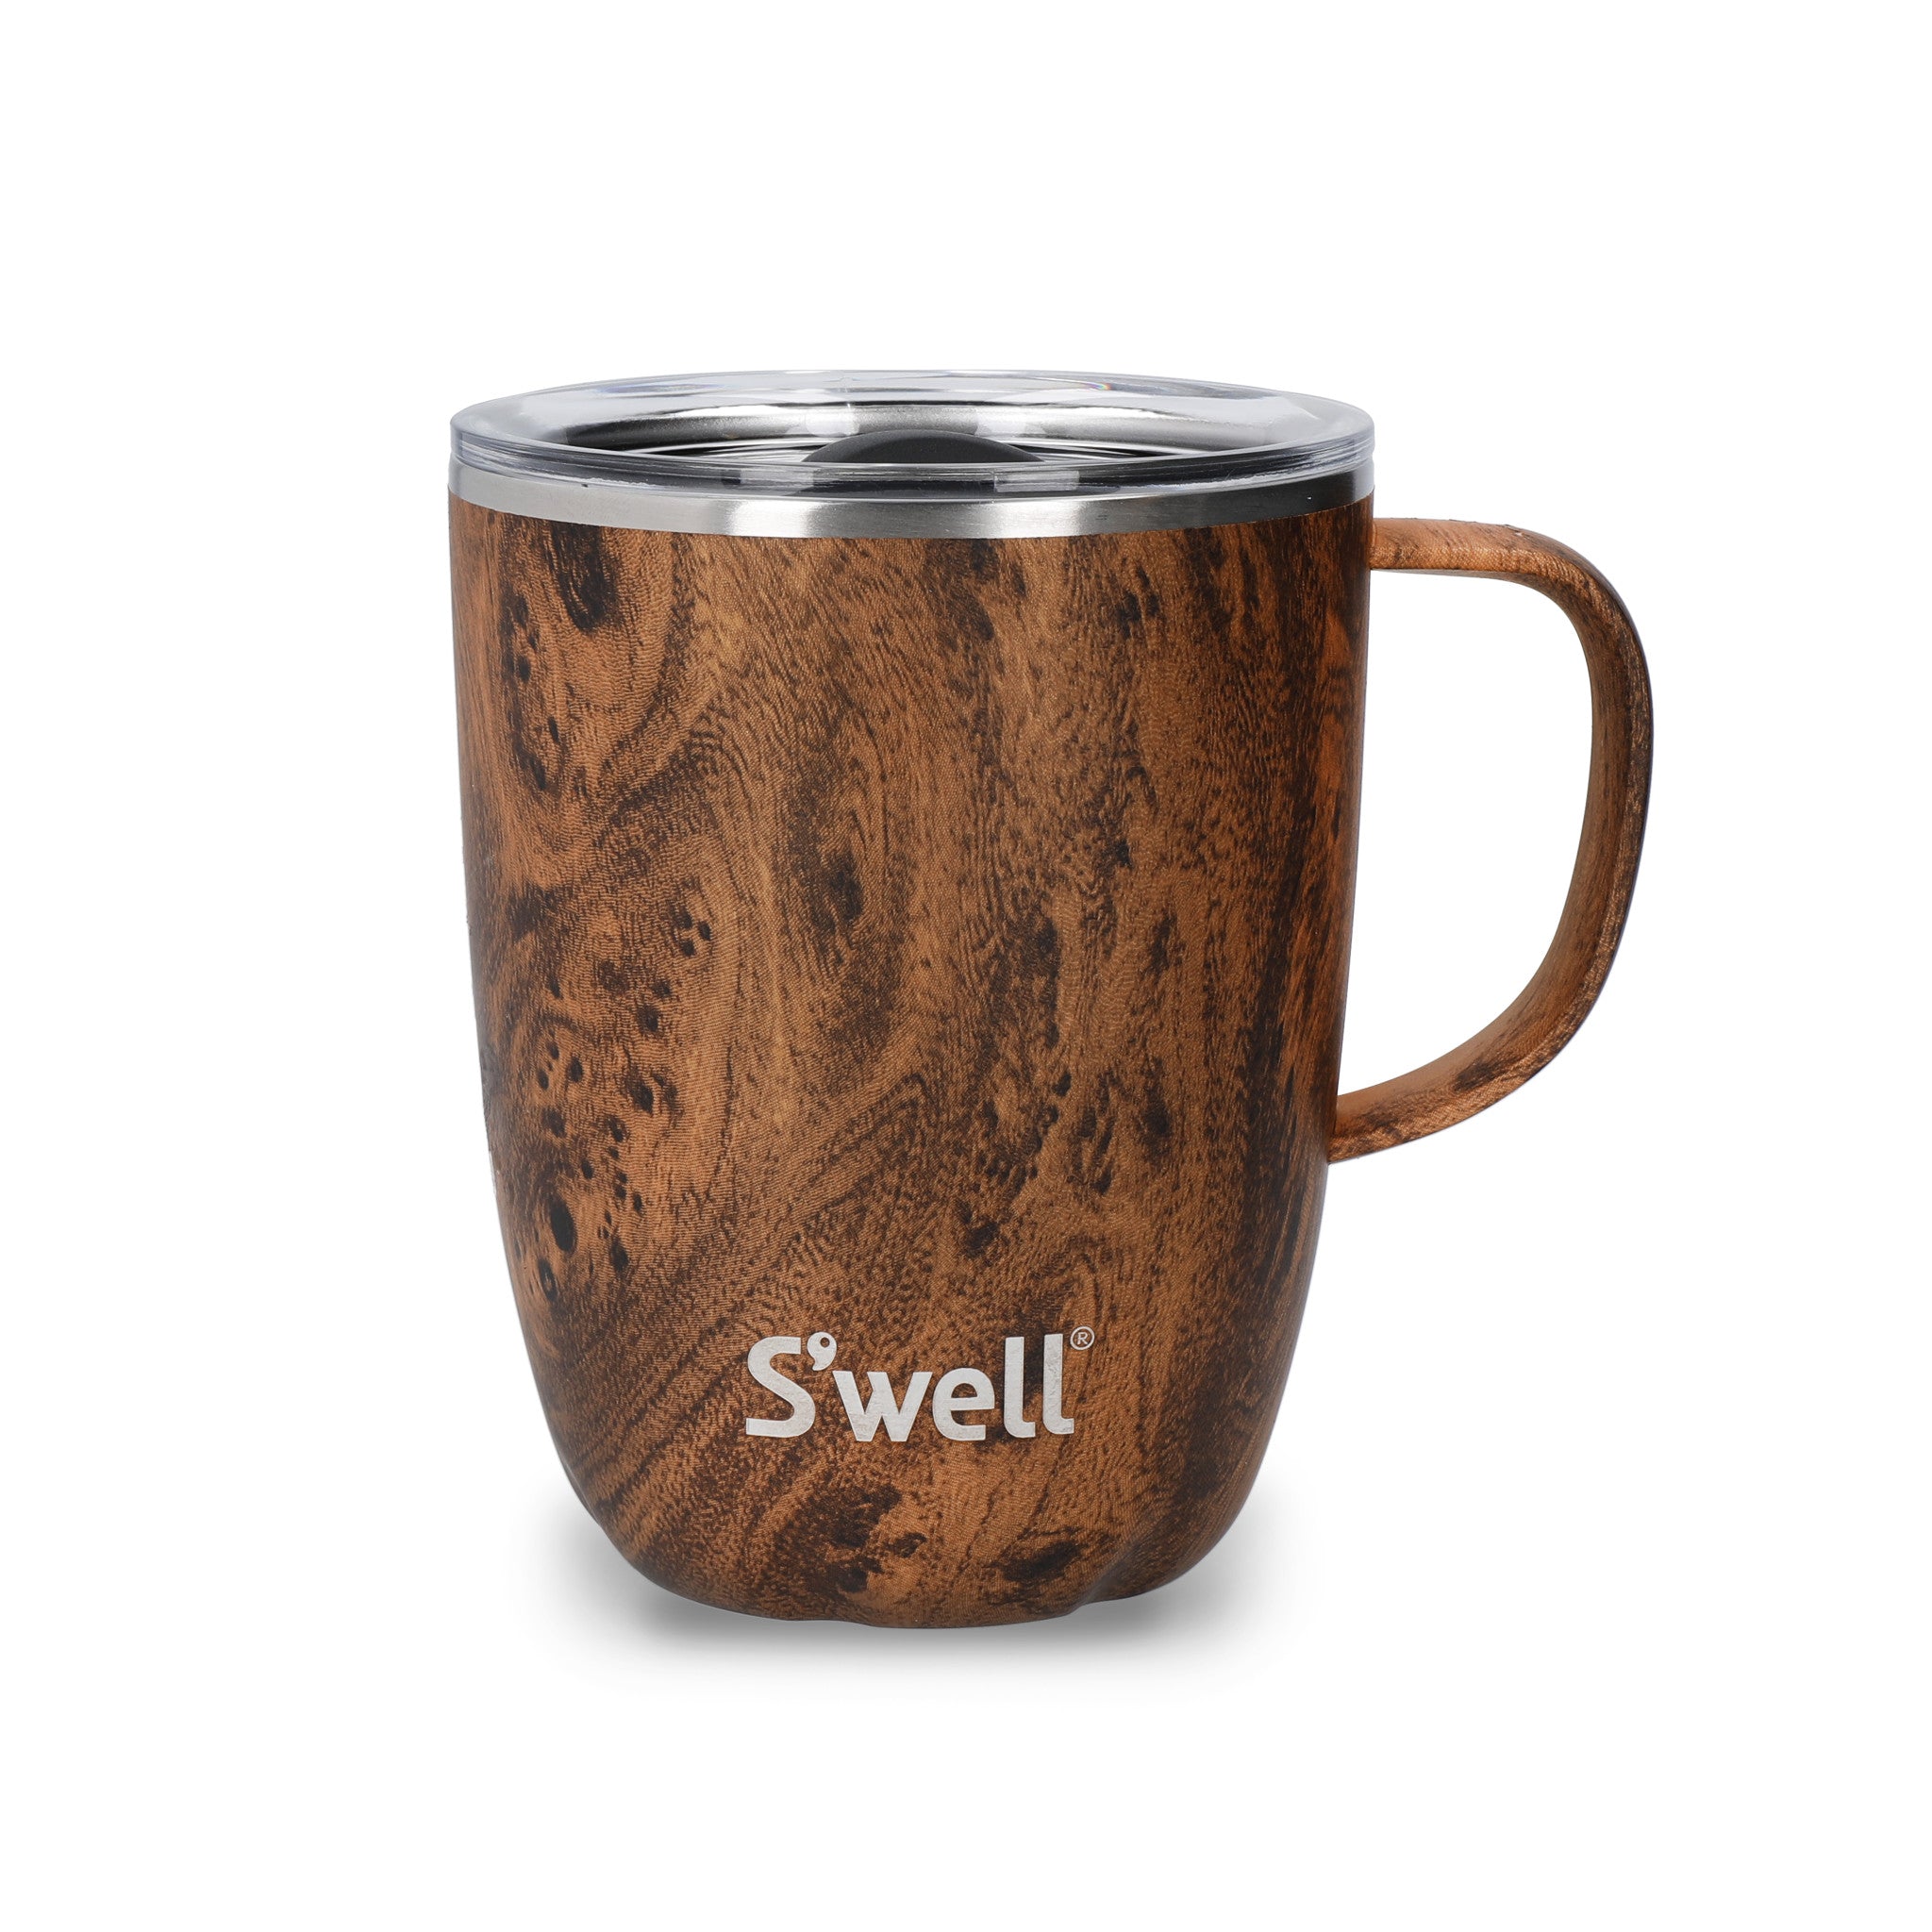 Image of S'well Teakwood Mug with Handle, 350ml